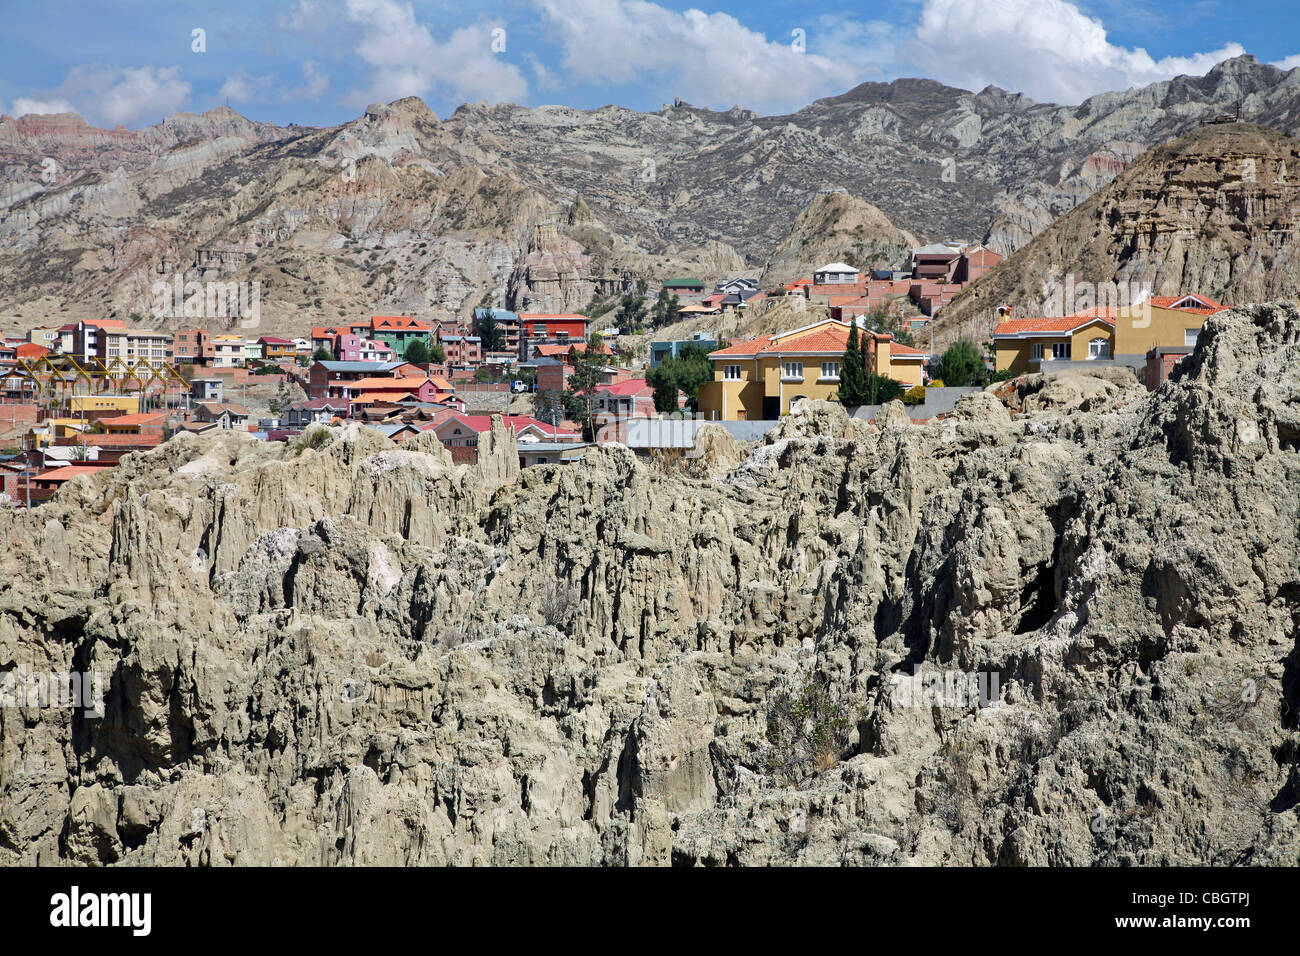 Maisons dans la vallée de la lune / valle de la luna près de la Paz, Bolivie Banque D'Images